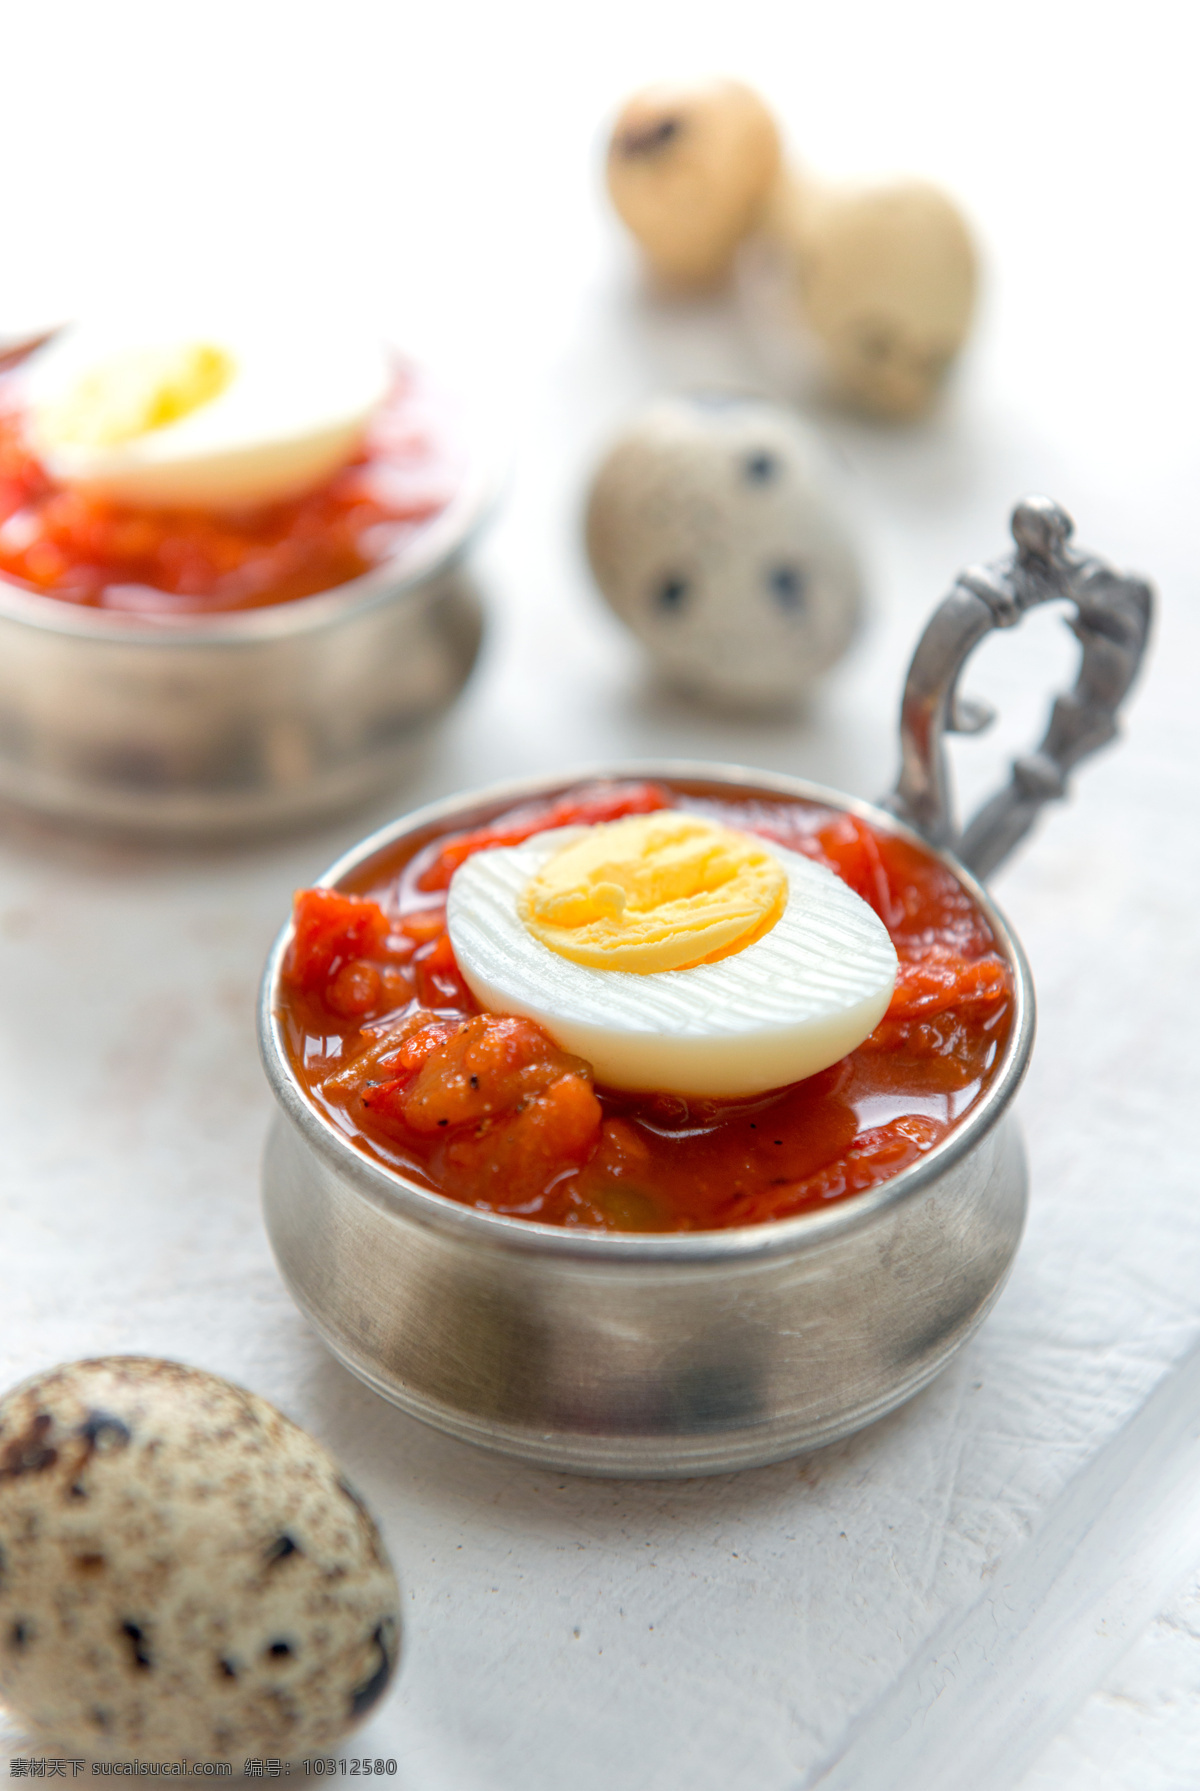 西红柿 上 半 鹌鹑 蛋 蔬菜 鹌鹑蛋 煮蛋 早餐 食品 美食图片 餐饮美食